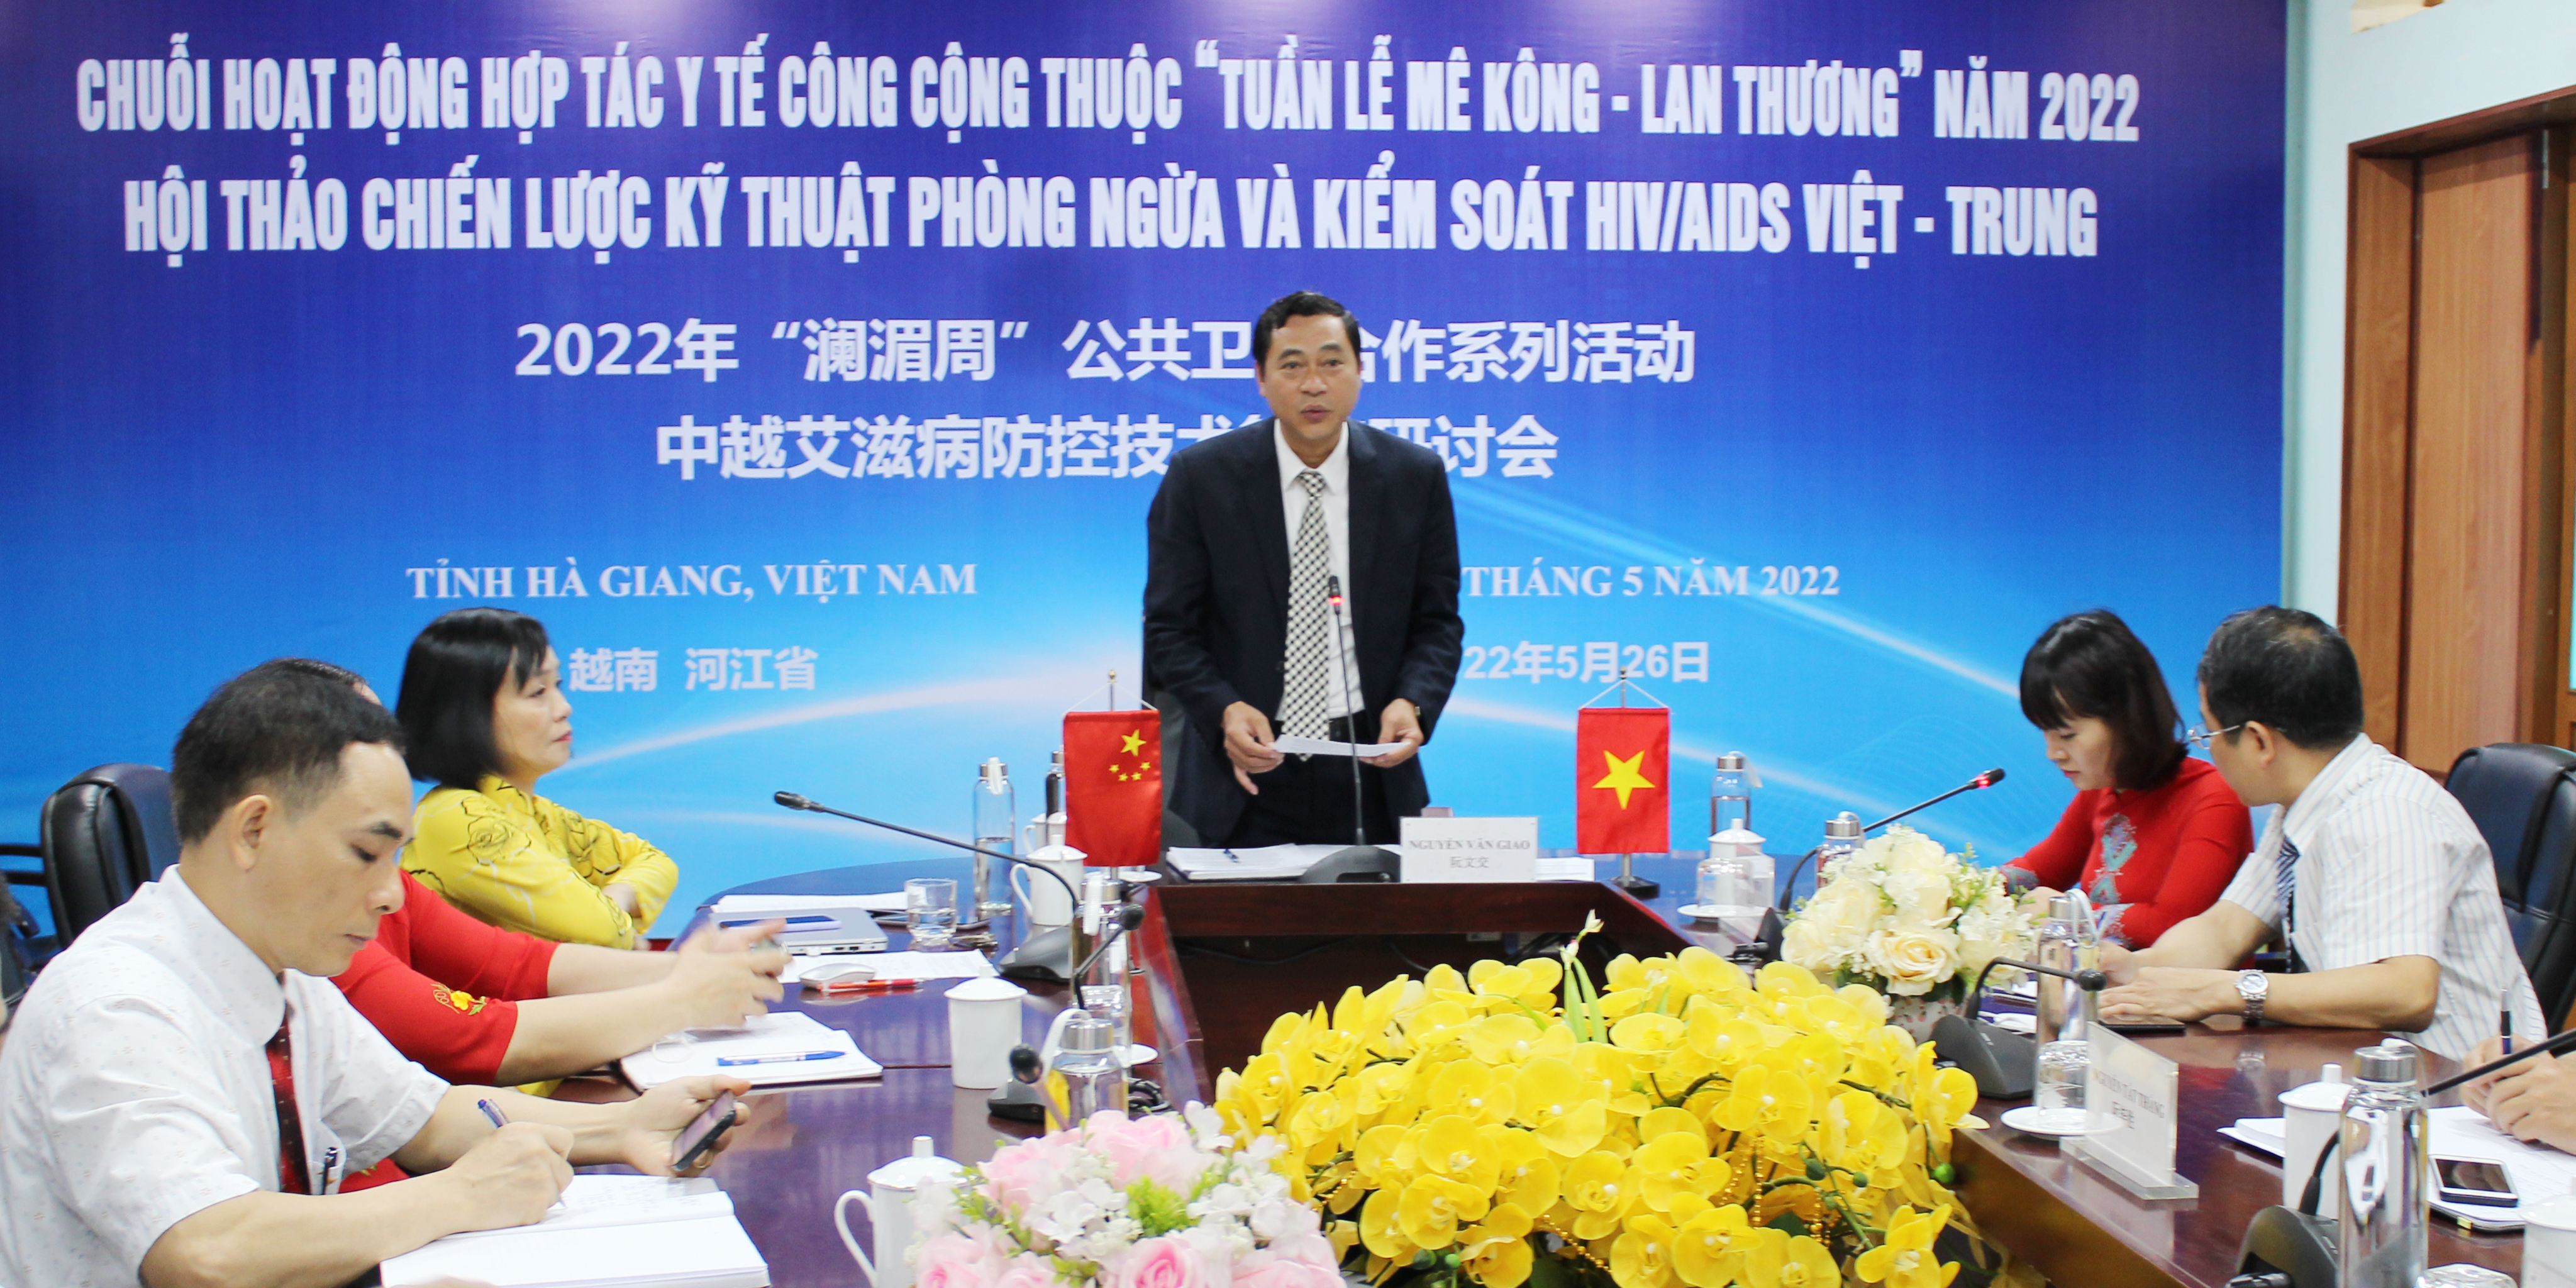 Hội thảo Chiến lược kỹ thuật phòng ngừa và kiểm soát HIV/AIDS  Việt – Trung với tỉnh Vân Nam Trung Quốc năm 2022